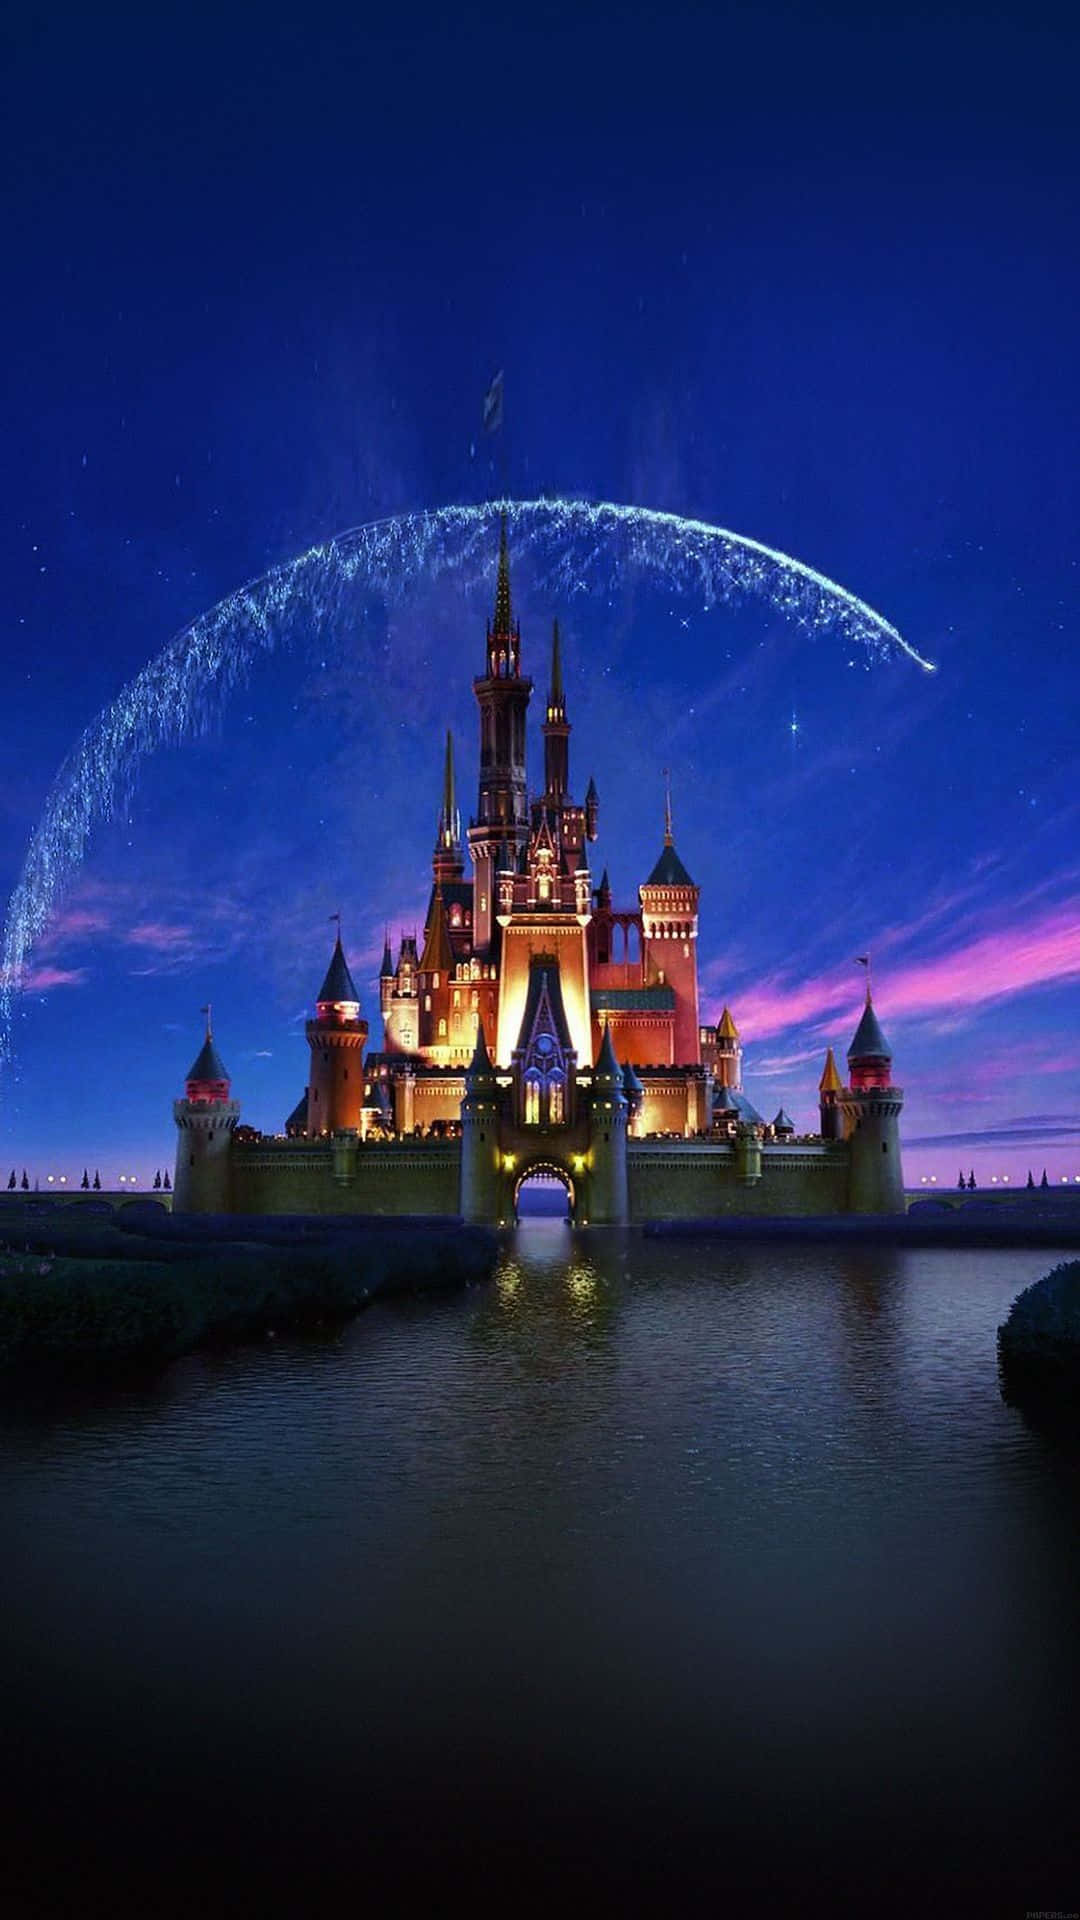 Erlebensie Den Zauber Von Disney World Mit Einem Iphone. Wallpaper